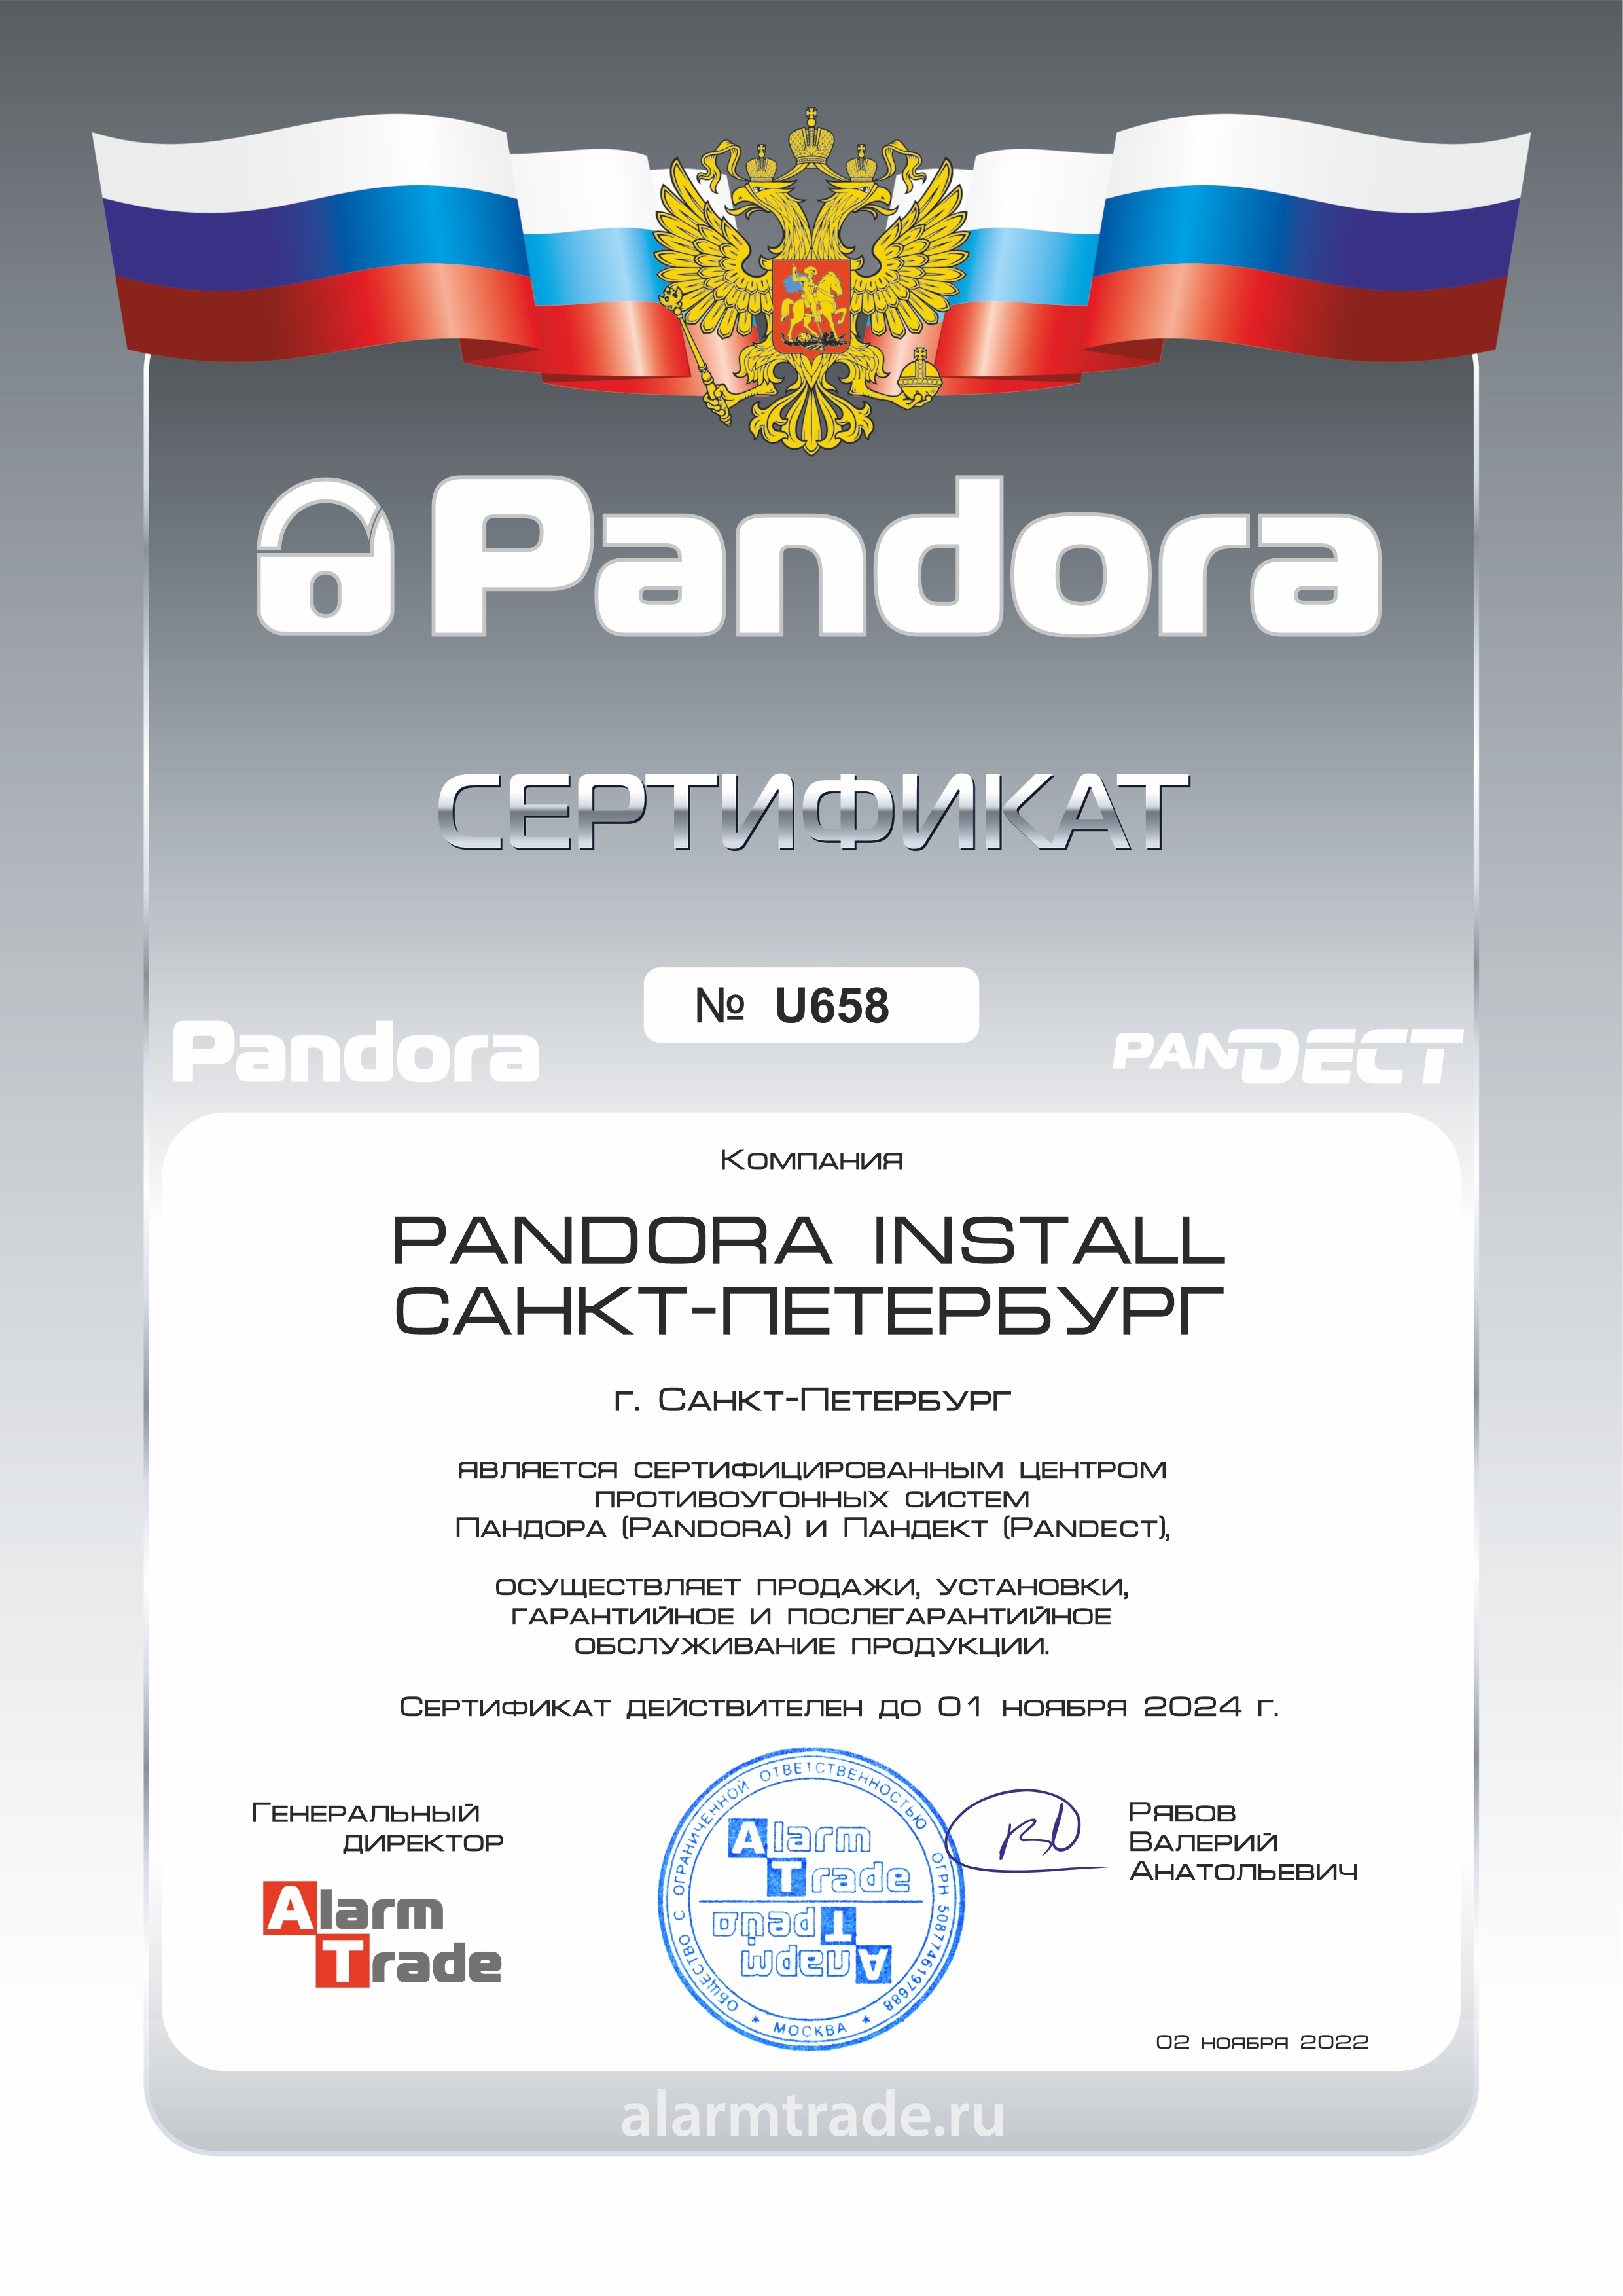 Сертификат официального центра Pandora и Pandect в Санкт-Петербурге